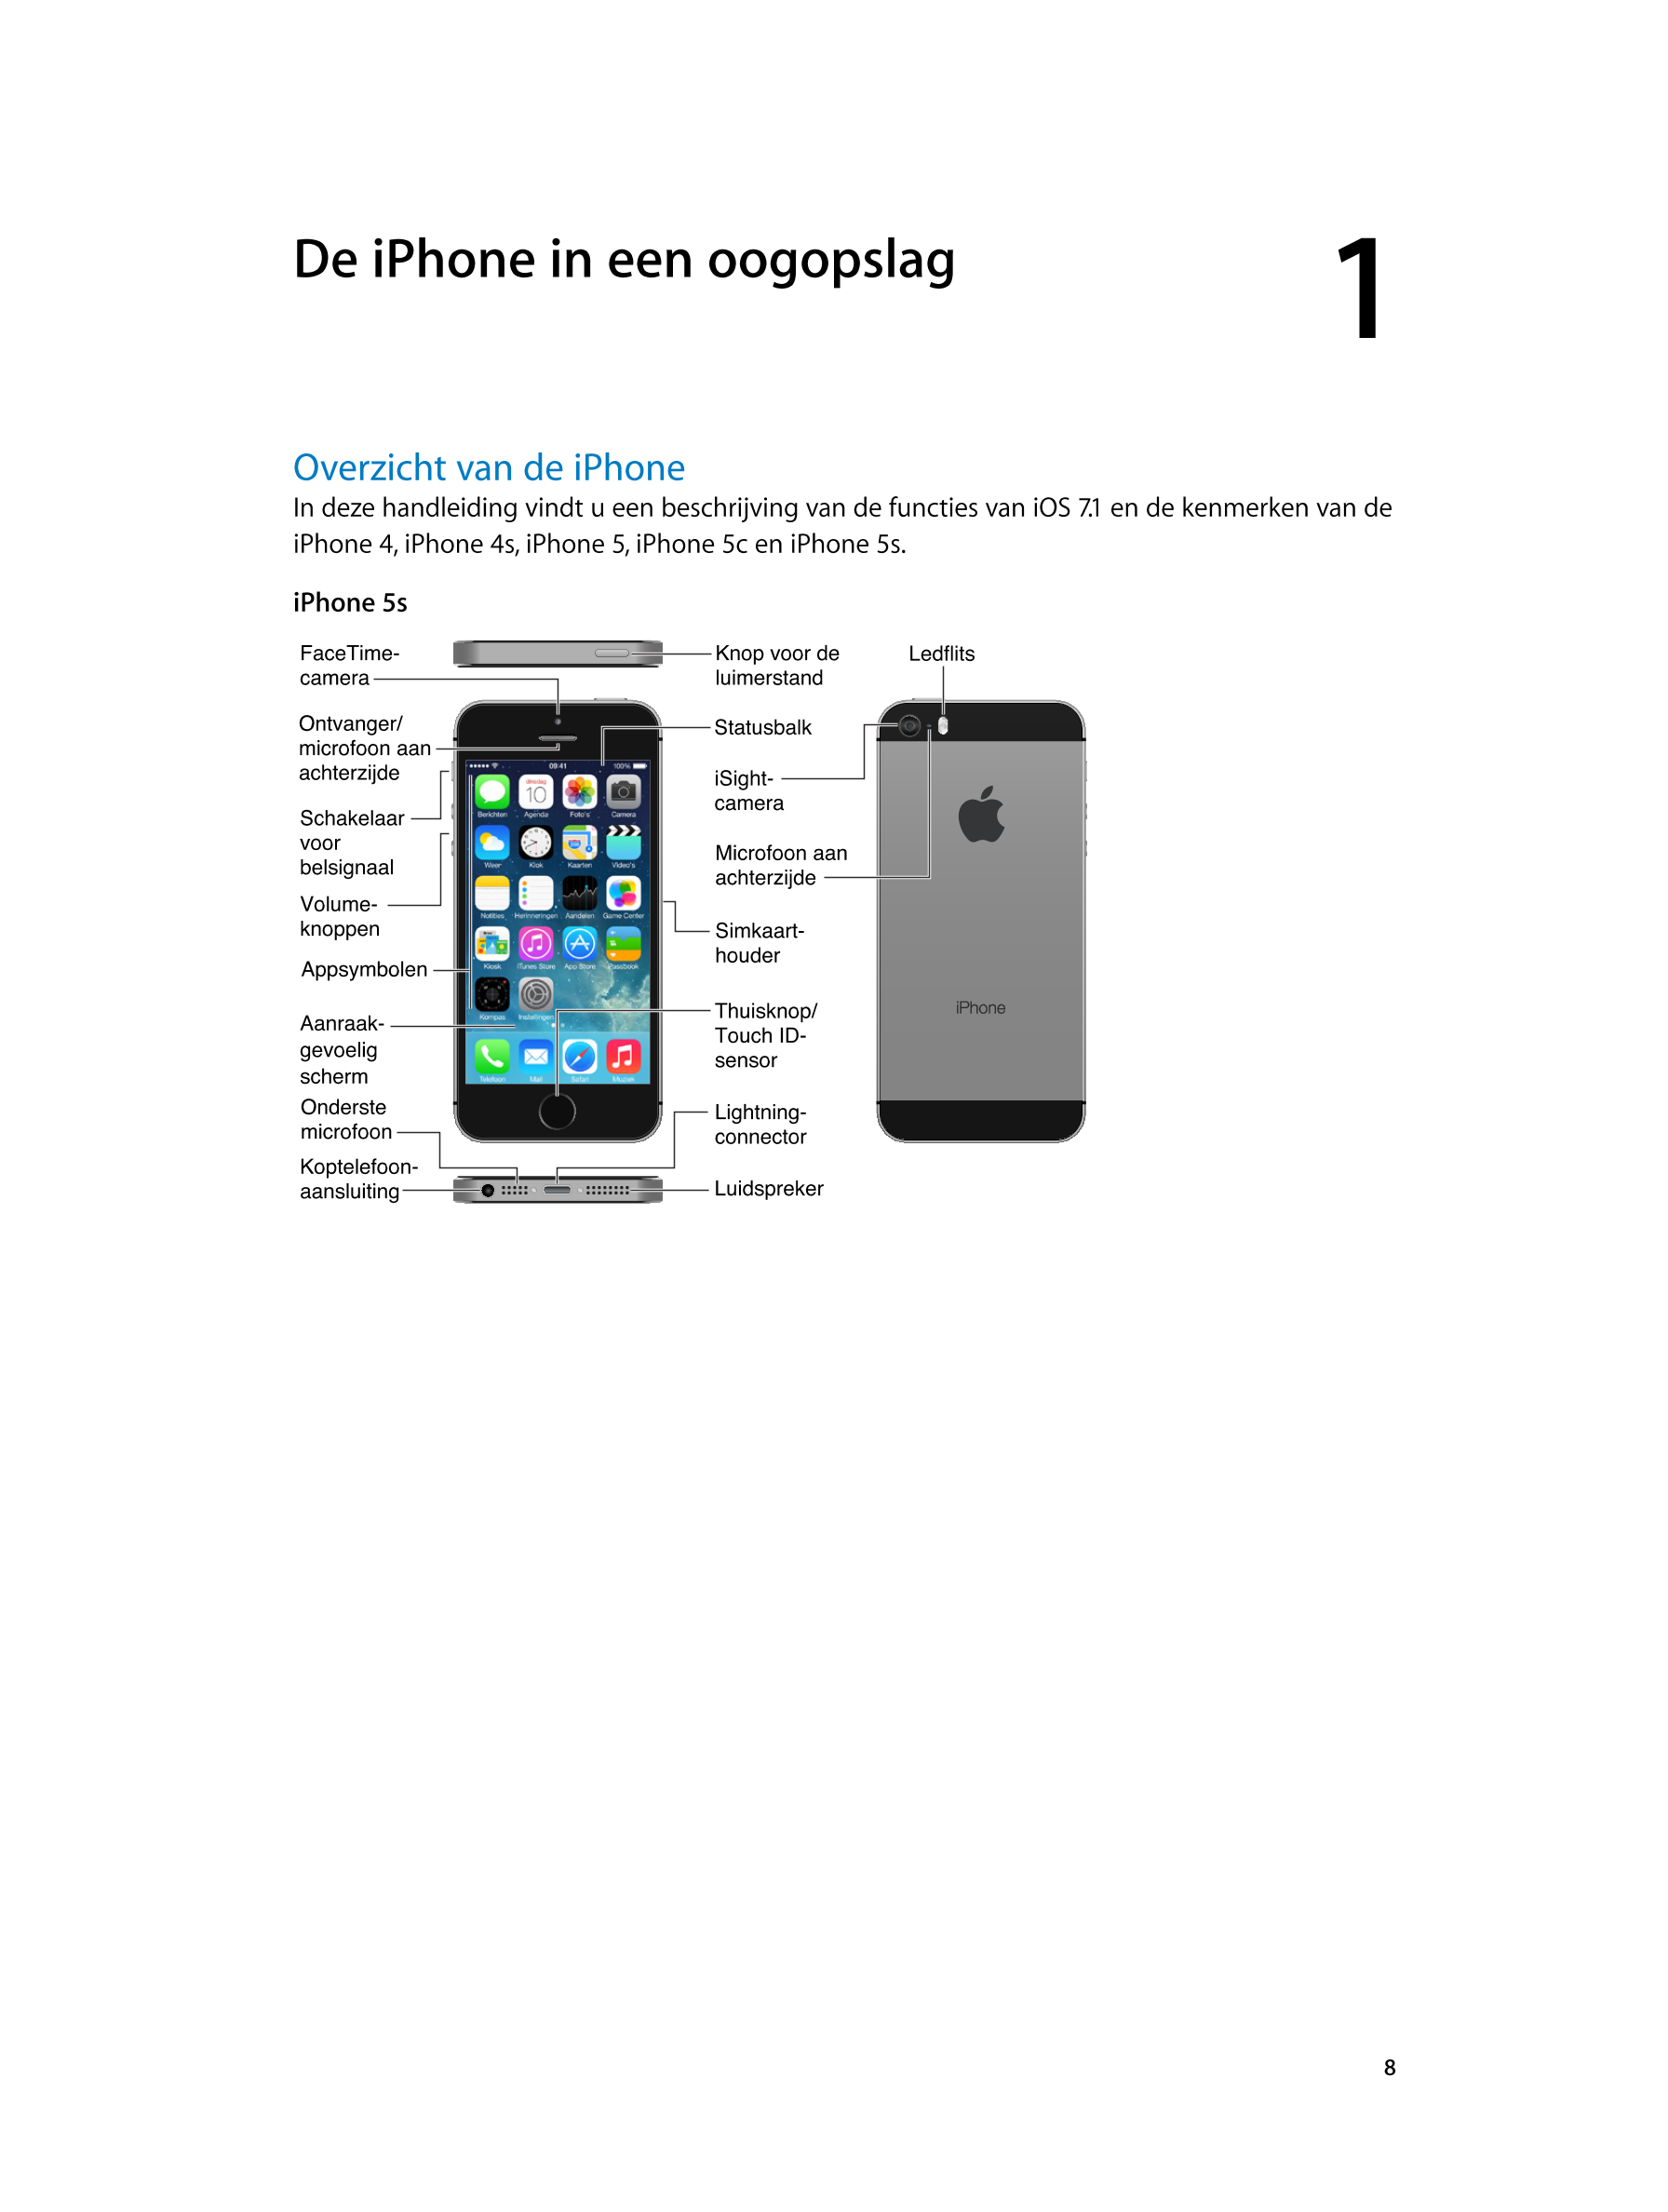   De iPhone in een oogopslag 1
Overzicht van de iPhone
In deze handleiding vindt u een beschrijving van de functies van iOS 7.1 